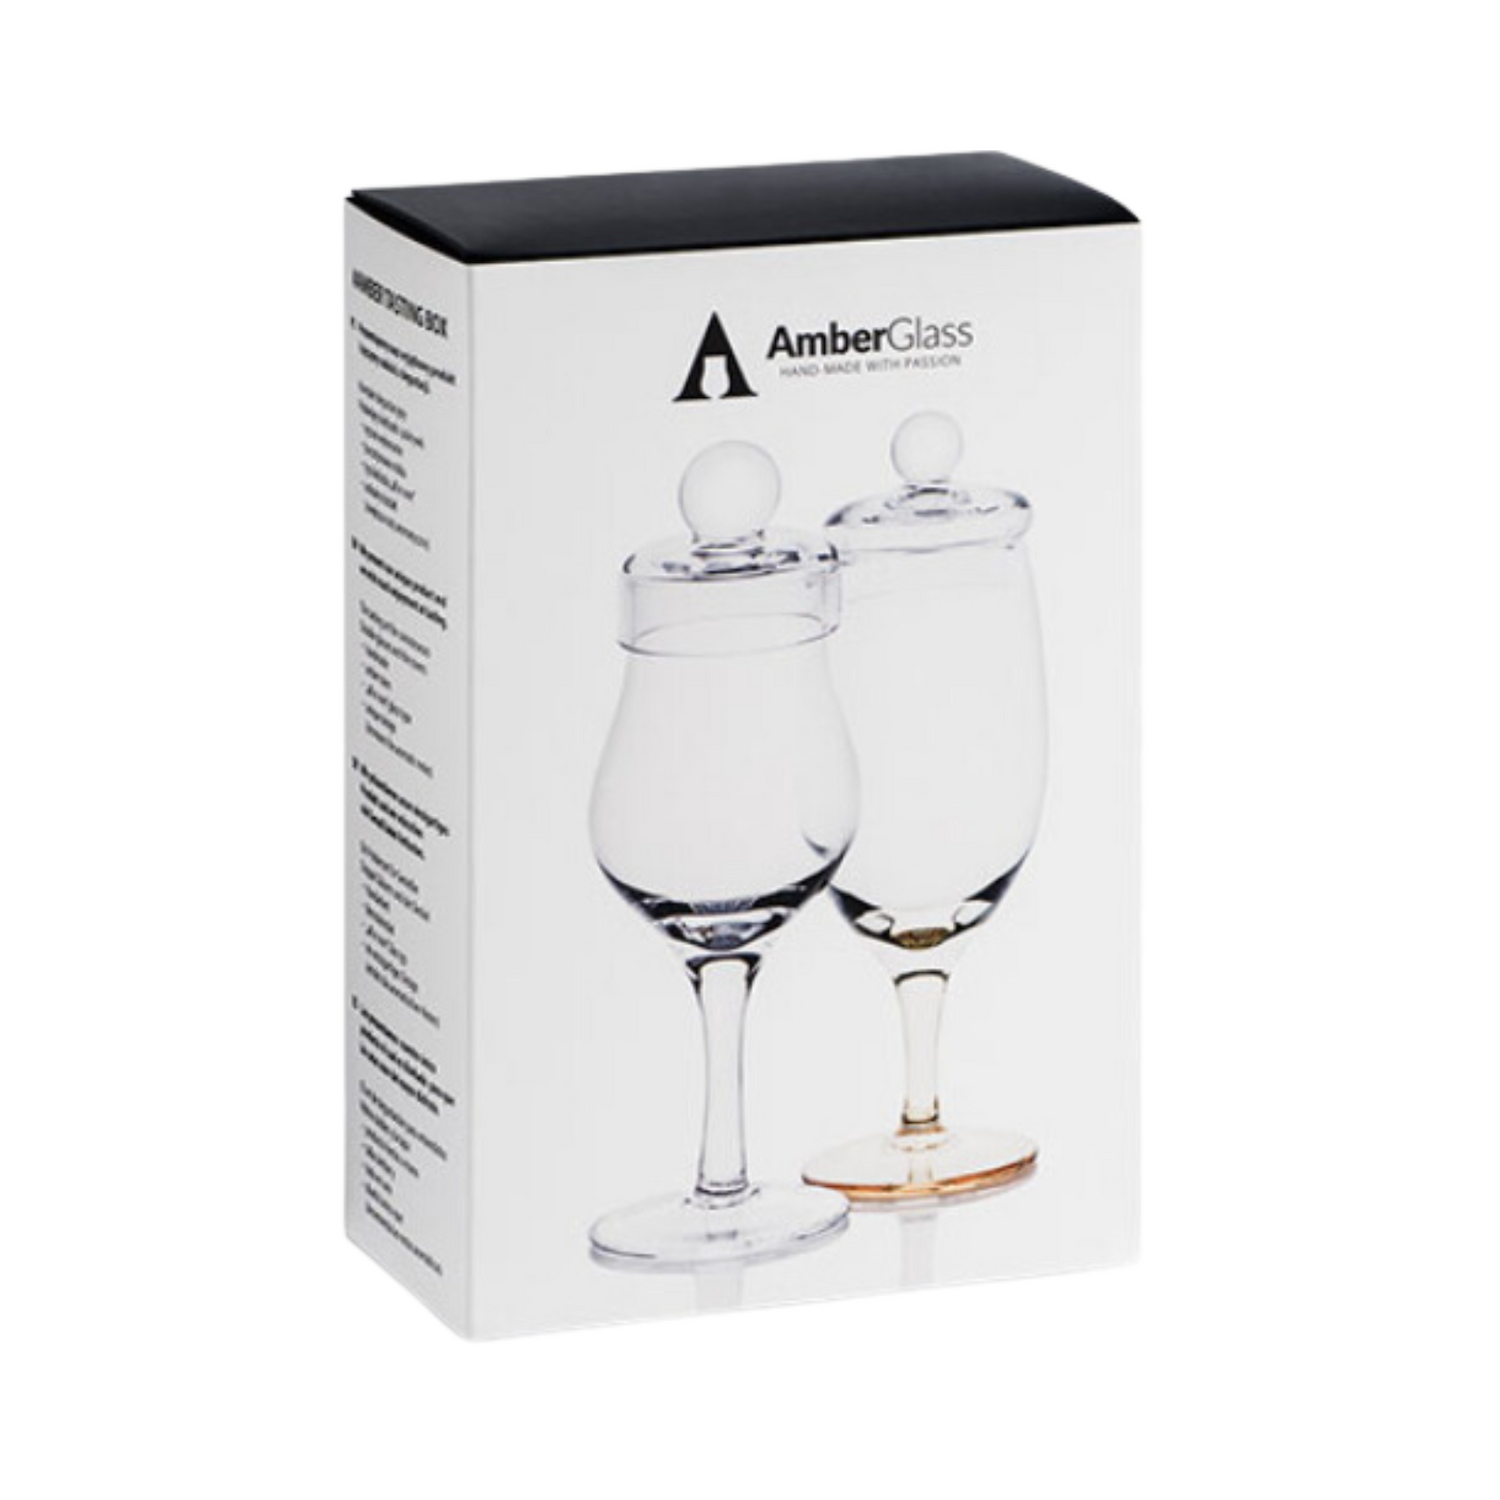 Amber Handmade Whisky Nosing & Tasting Box - Set of 2 Glasses